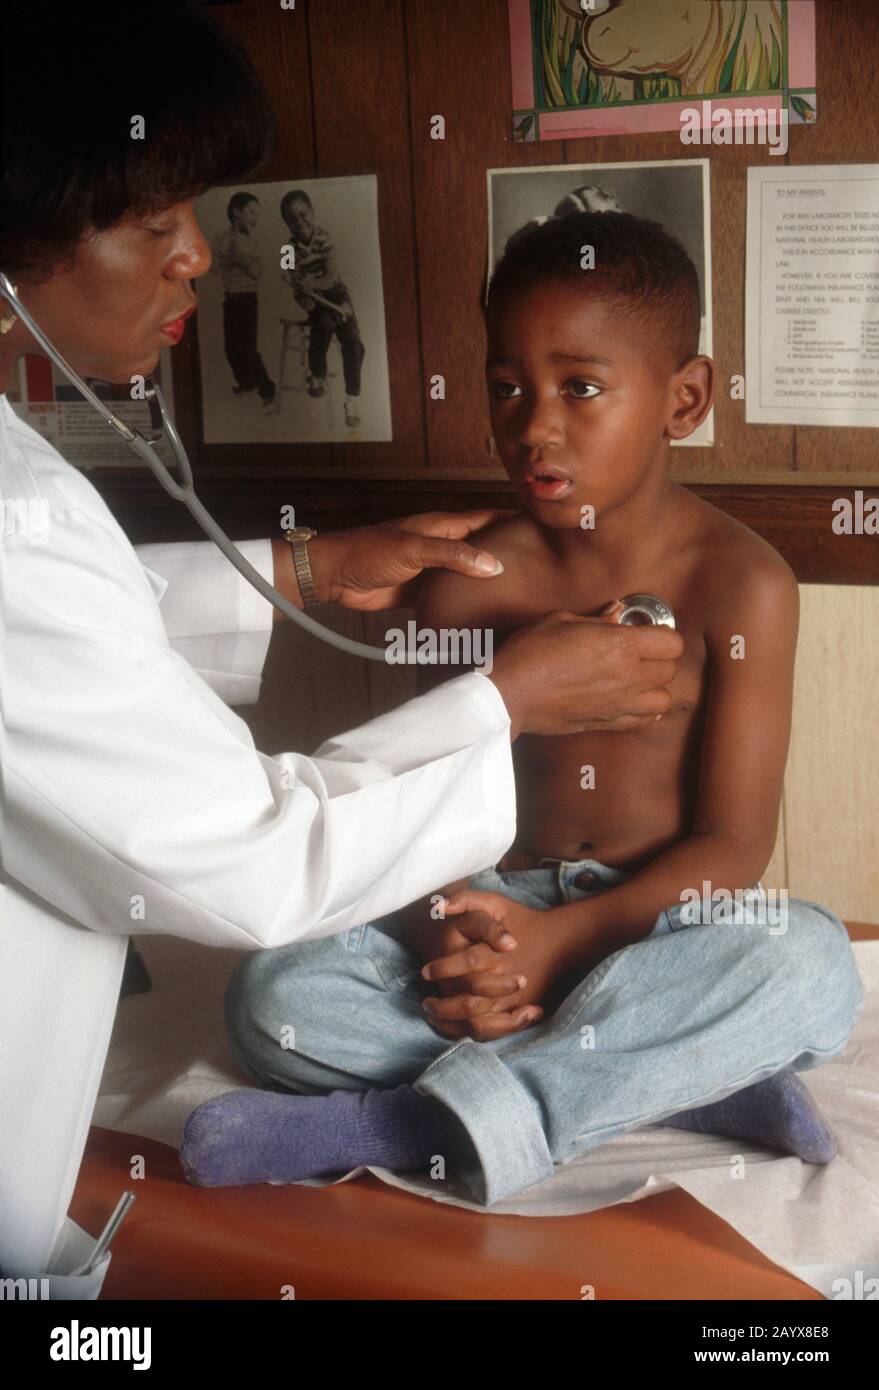 Junge beim Arzt - Arzt mit einem Stethoskop Stockfoto